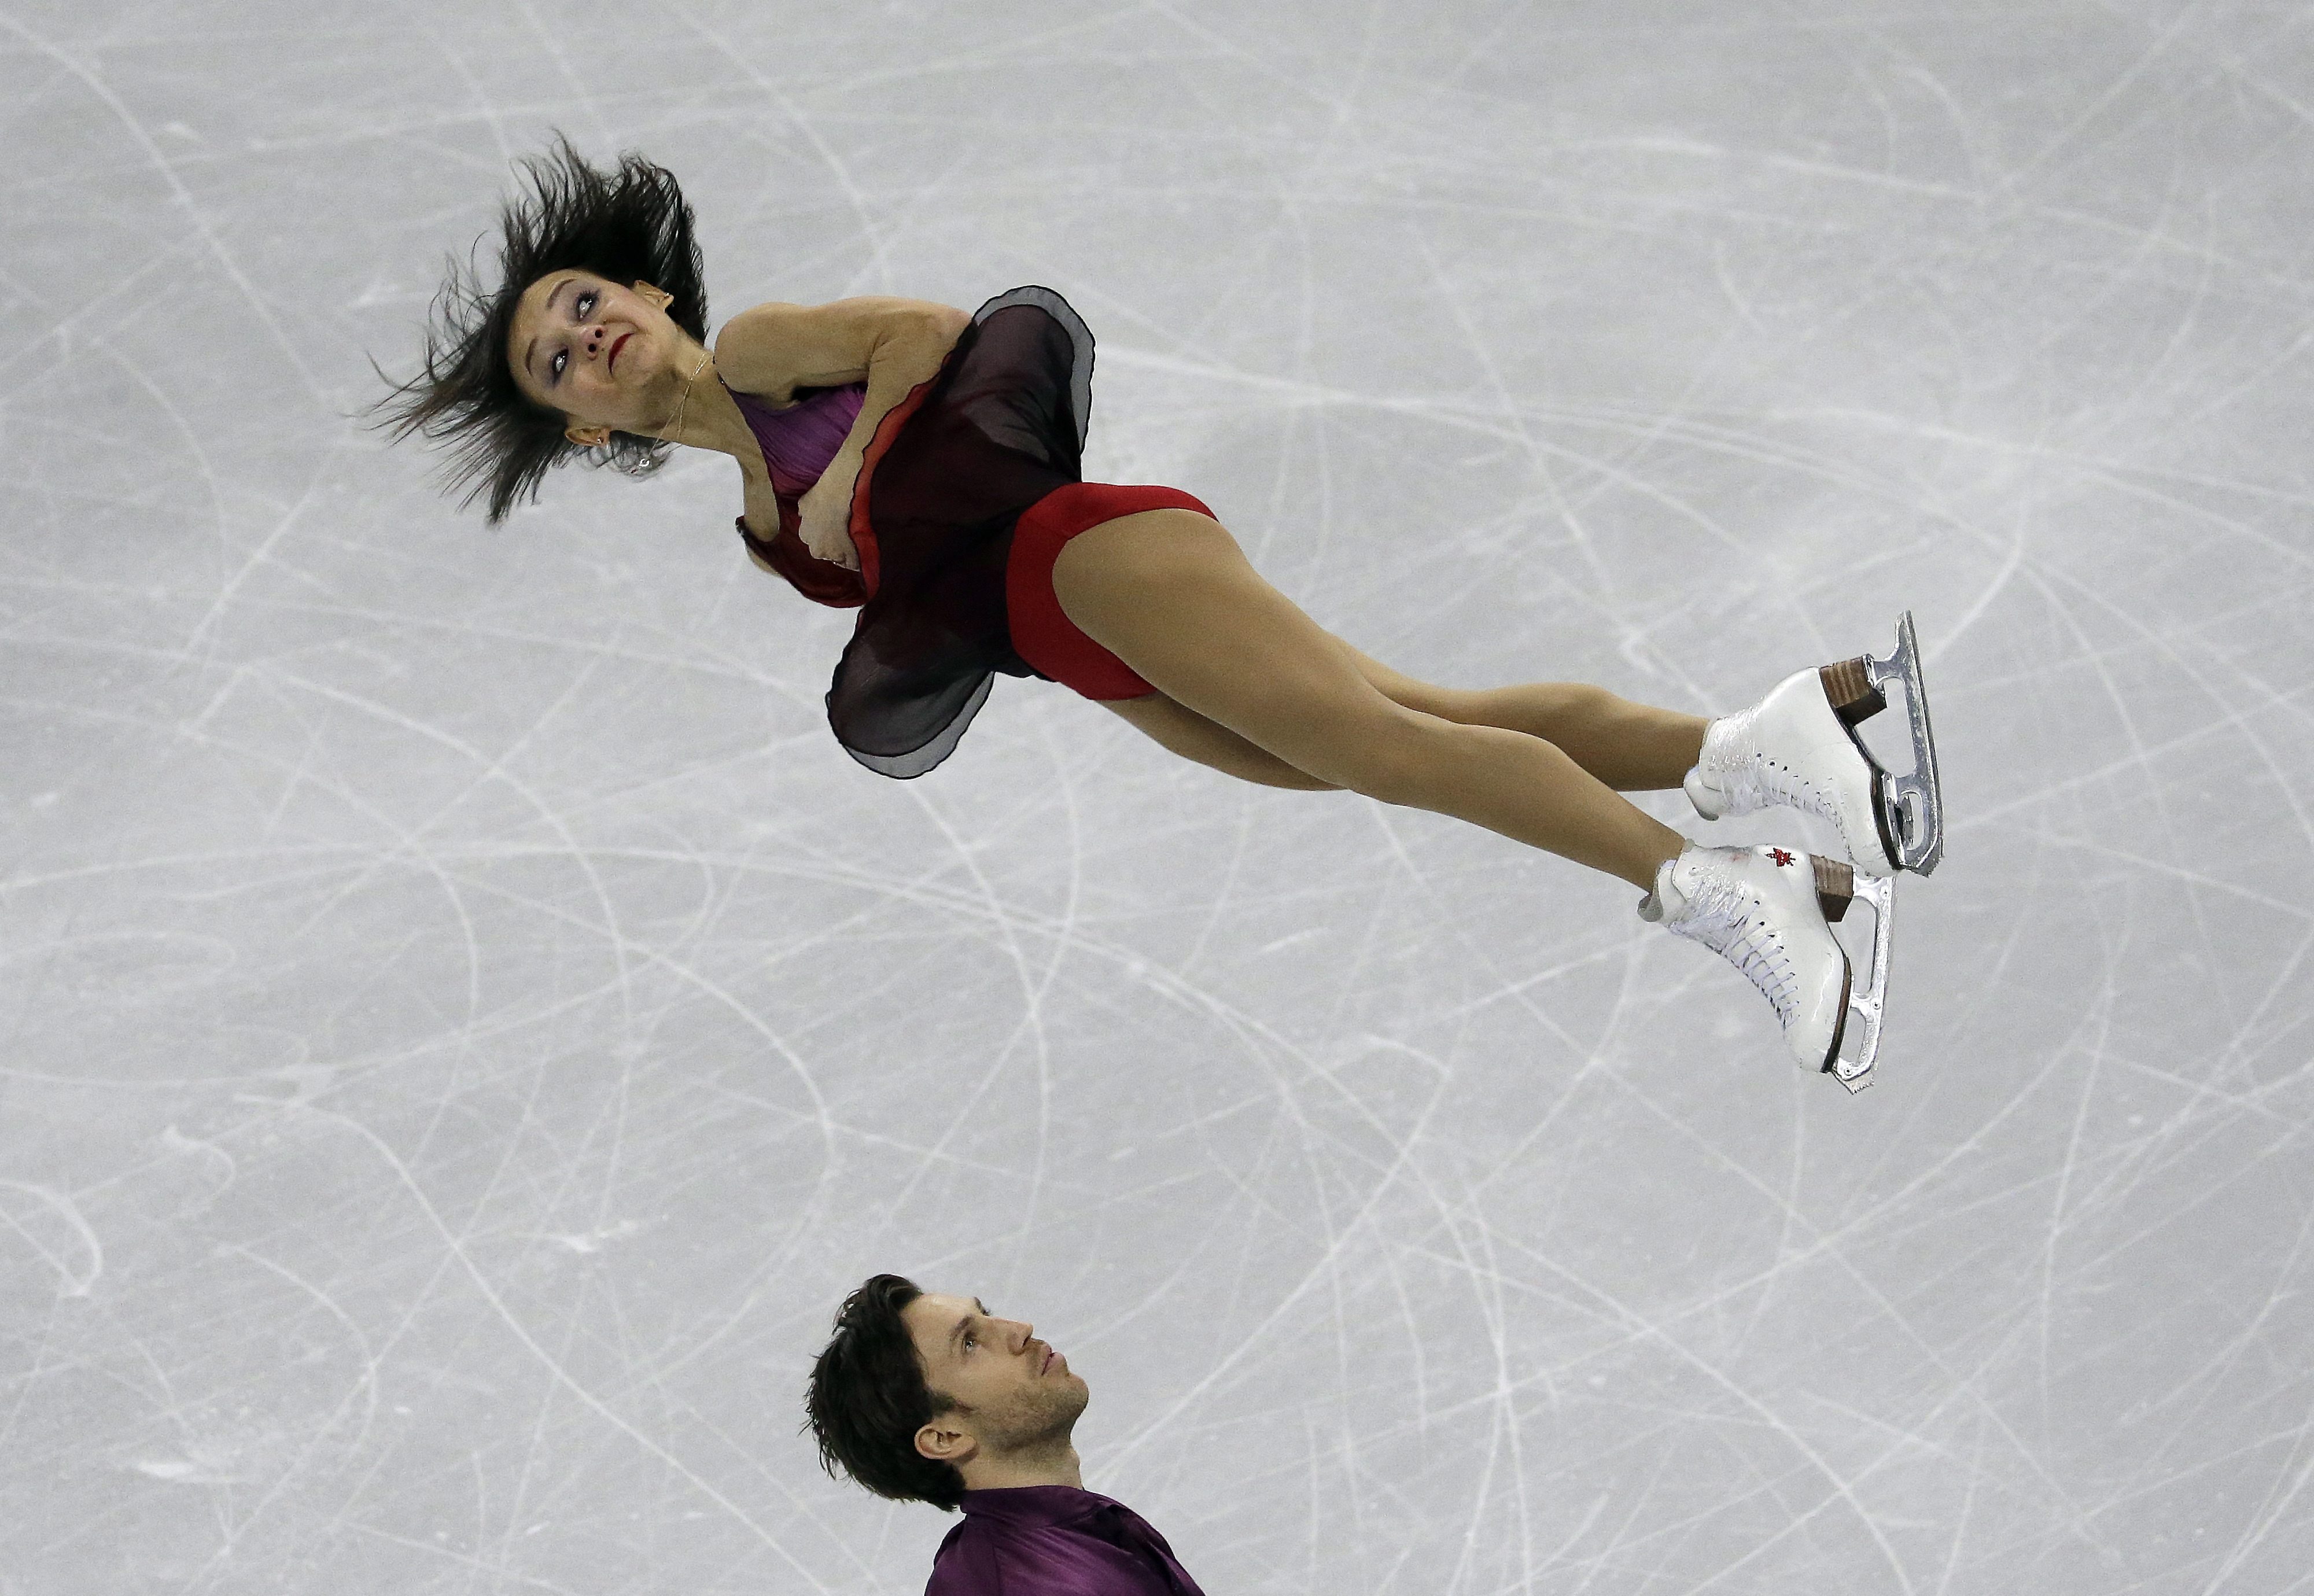 Les Canadiens Lubov Ilyushechkina et Dylan Moscovitch lors des Championnats des quatre continents, le 18 février 2017. (AP Photo/Ahn Young-joon)